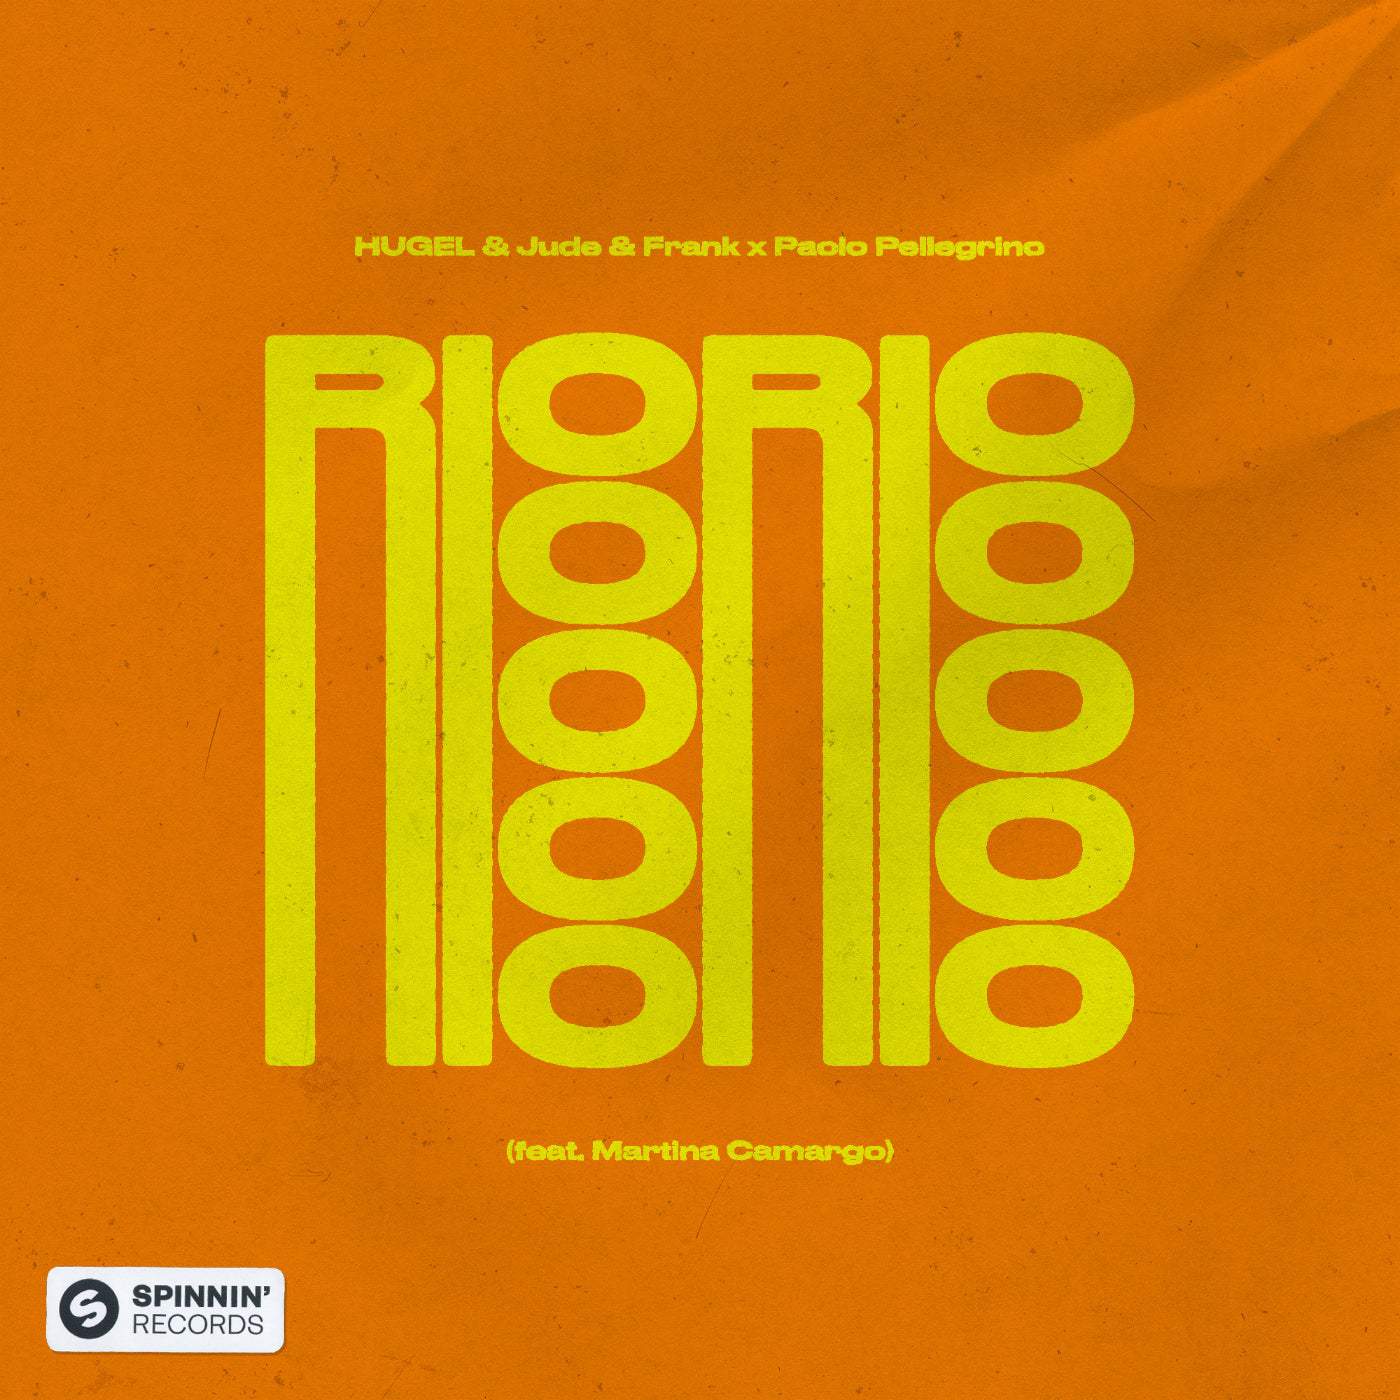 Download Paolo Pellegrino, Martina Camargo, Hugel, Jude & Frank - Rio Rio (feat. Martina Camargo) [Extended Mix] on Electrobuzz